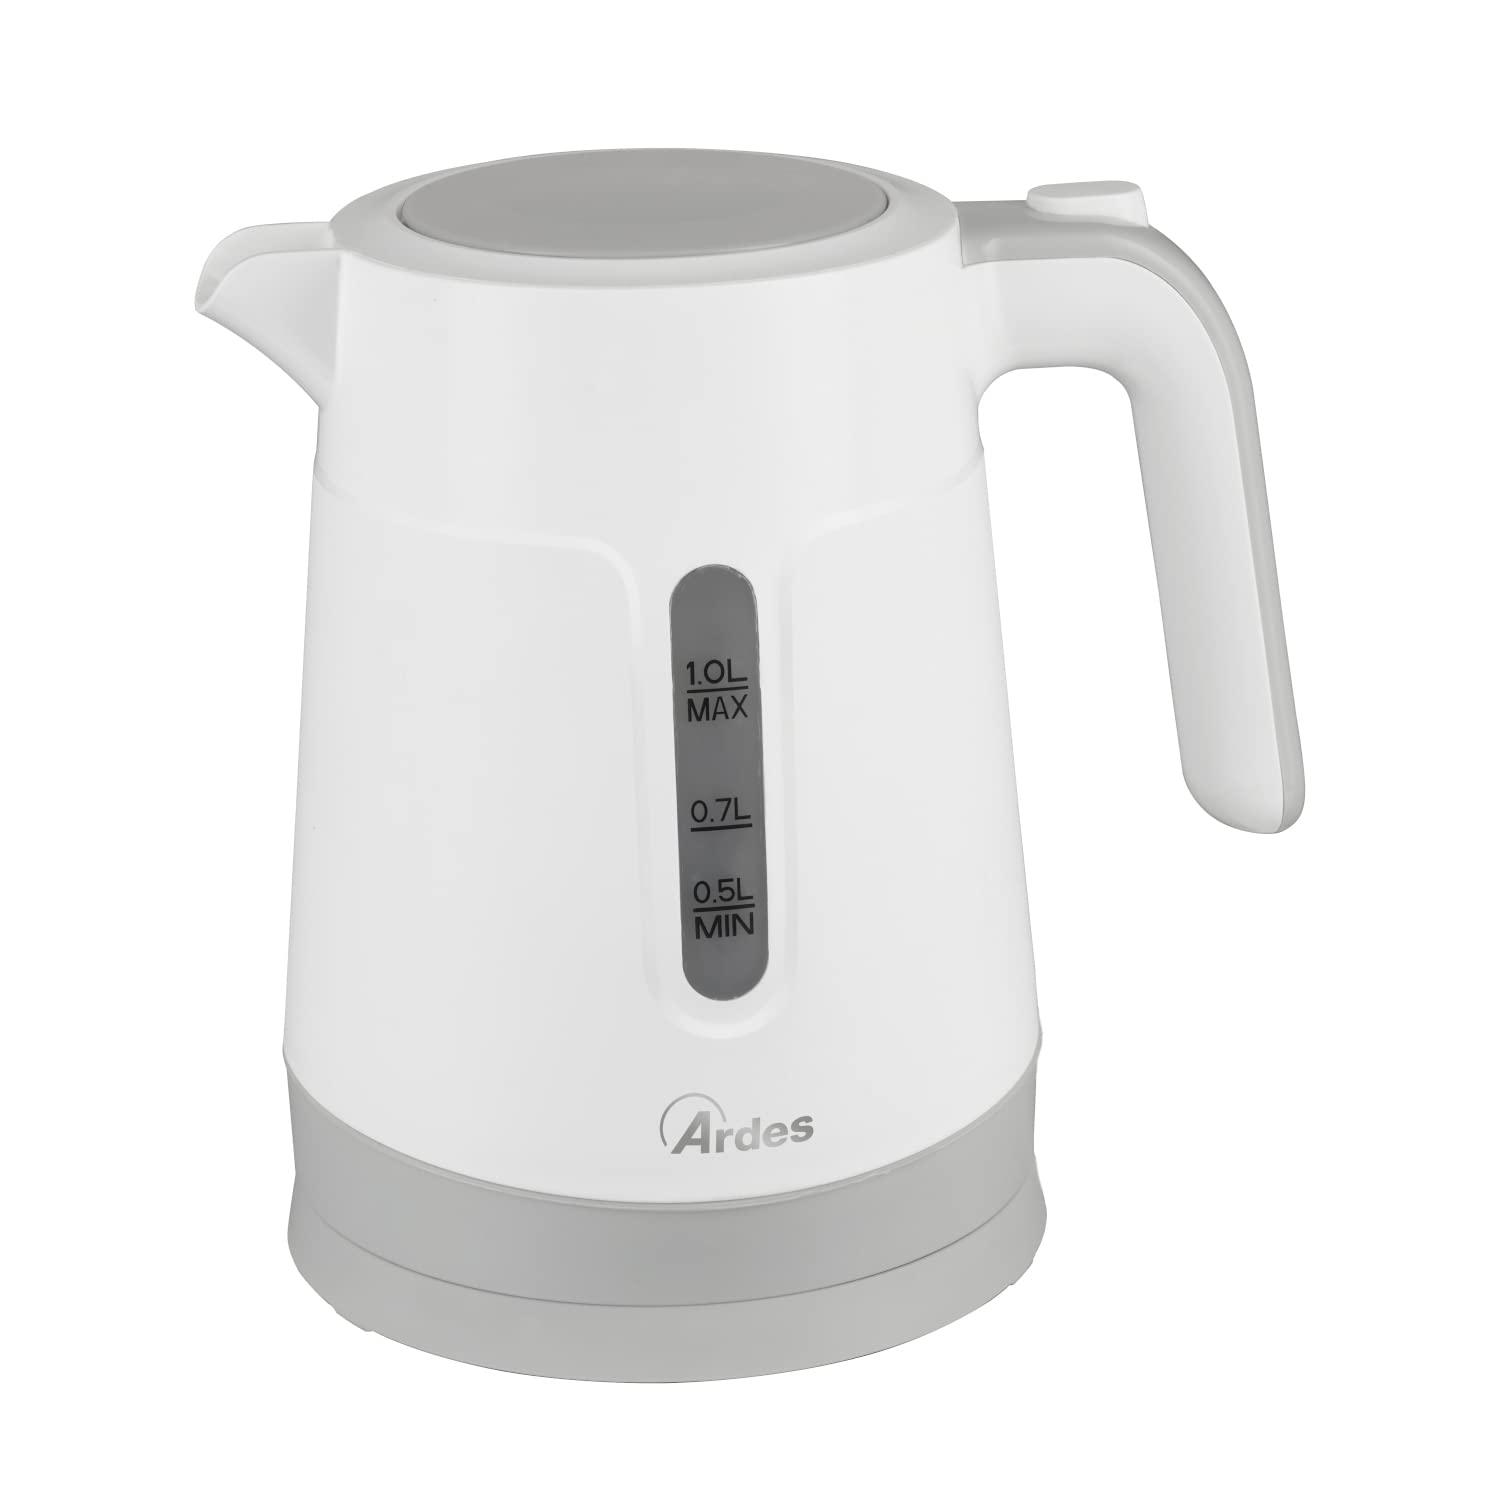 ARDES - Elektrischer Wasserkocher KETTY GLAM 1 Liter - Elektrischer Wasserkocher für Kräutertees und heiße Getränke - Wasserkocher mit elektrischer Basis und Kabelaufwicklung